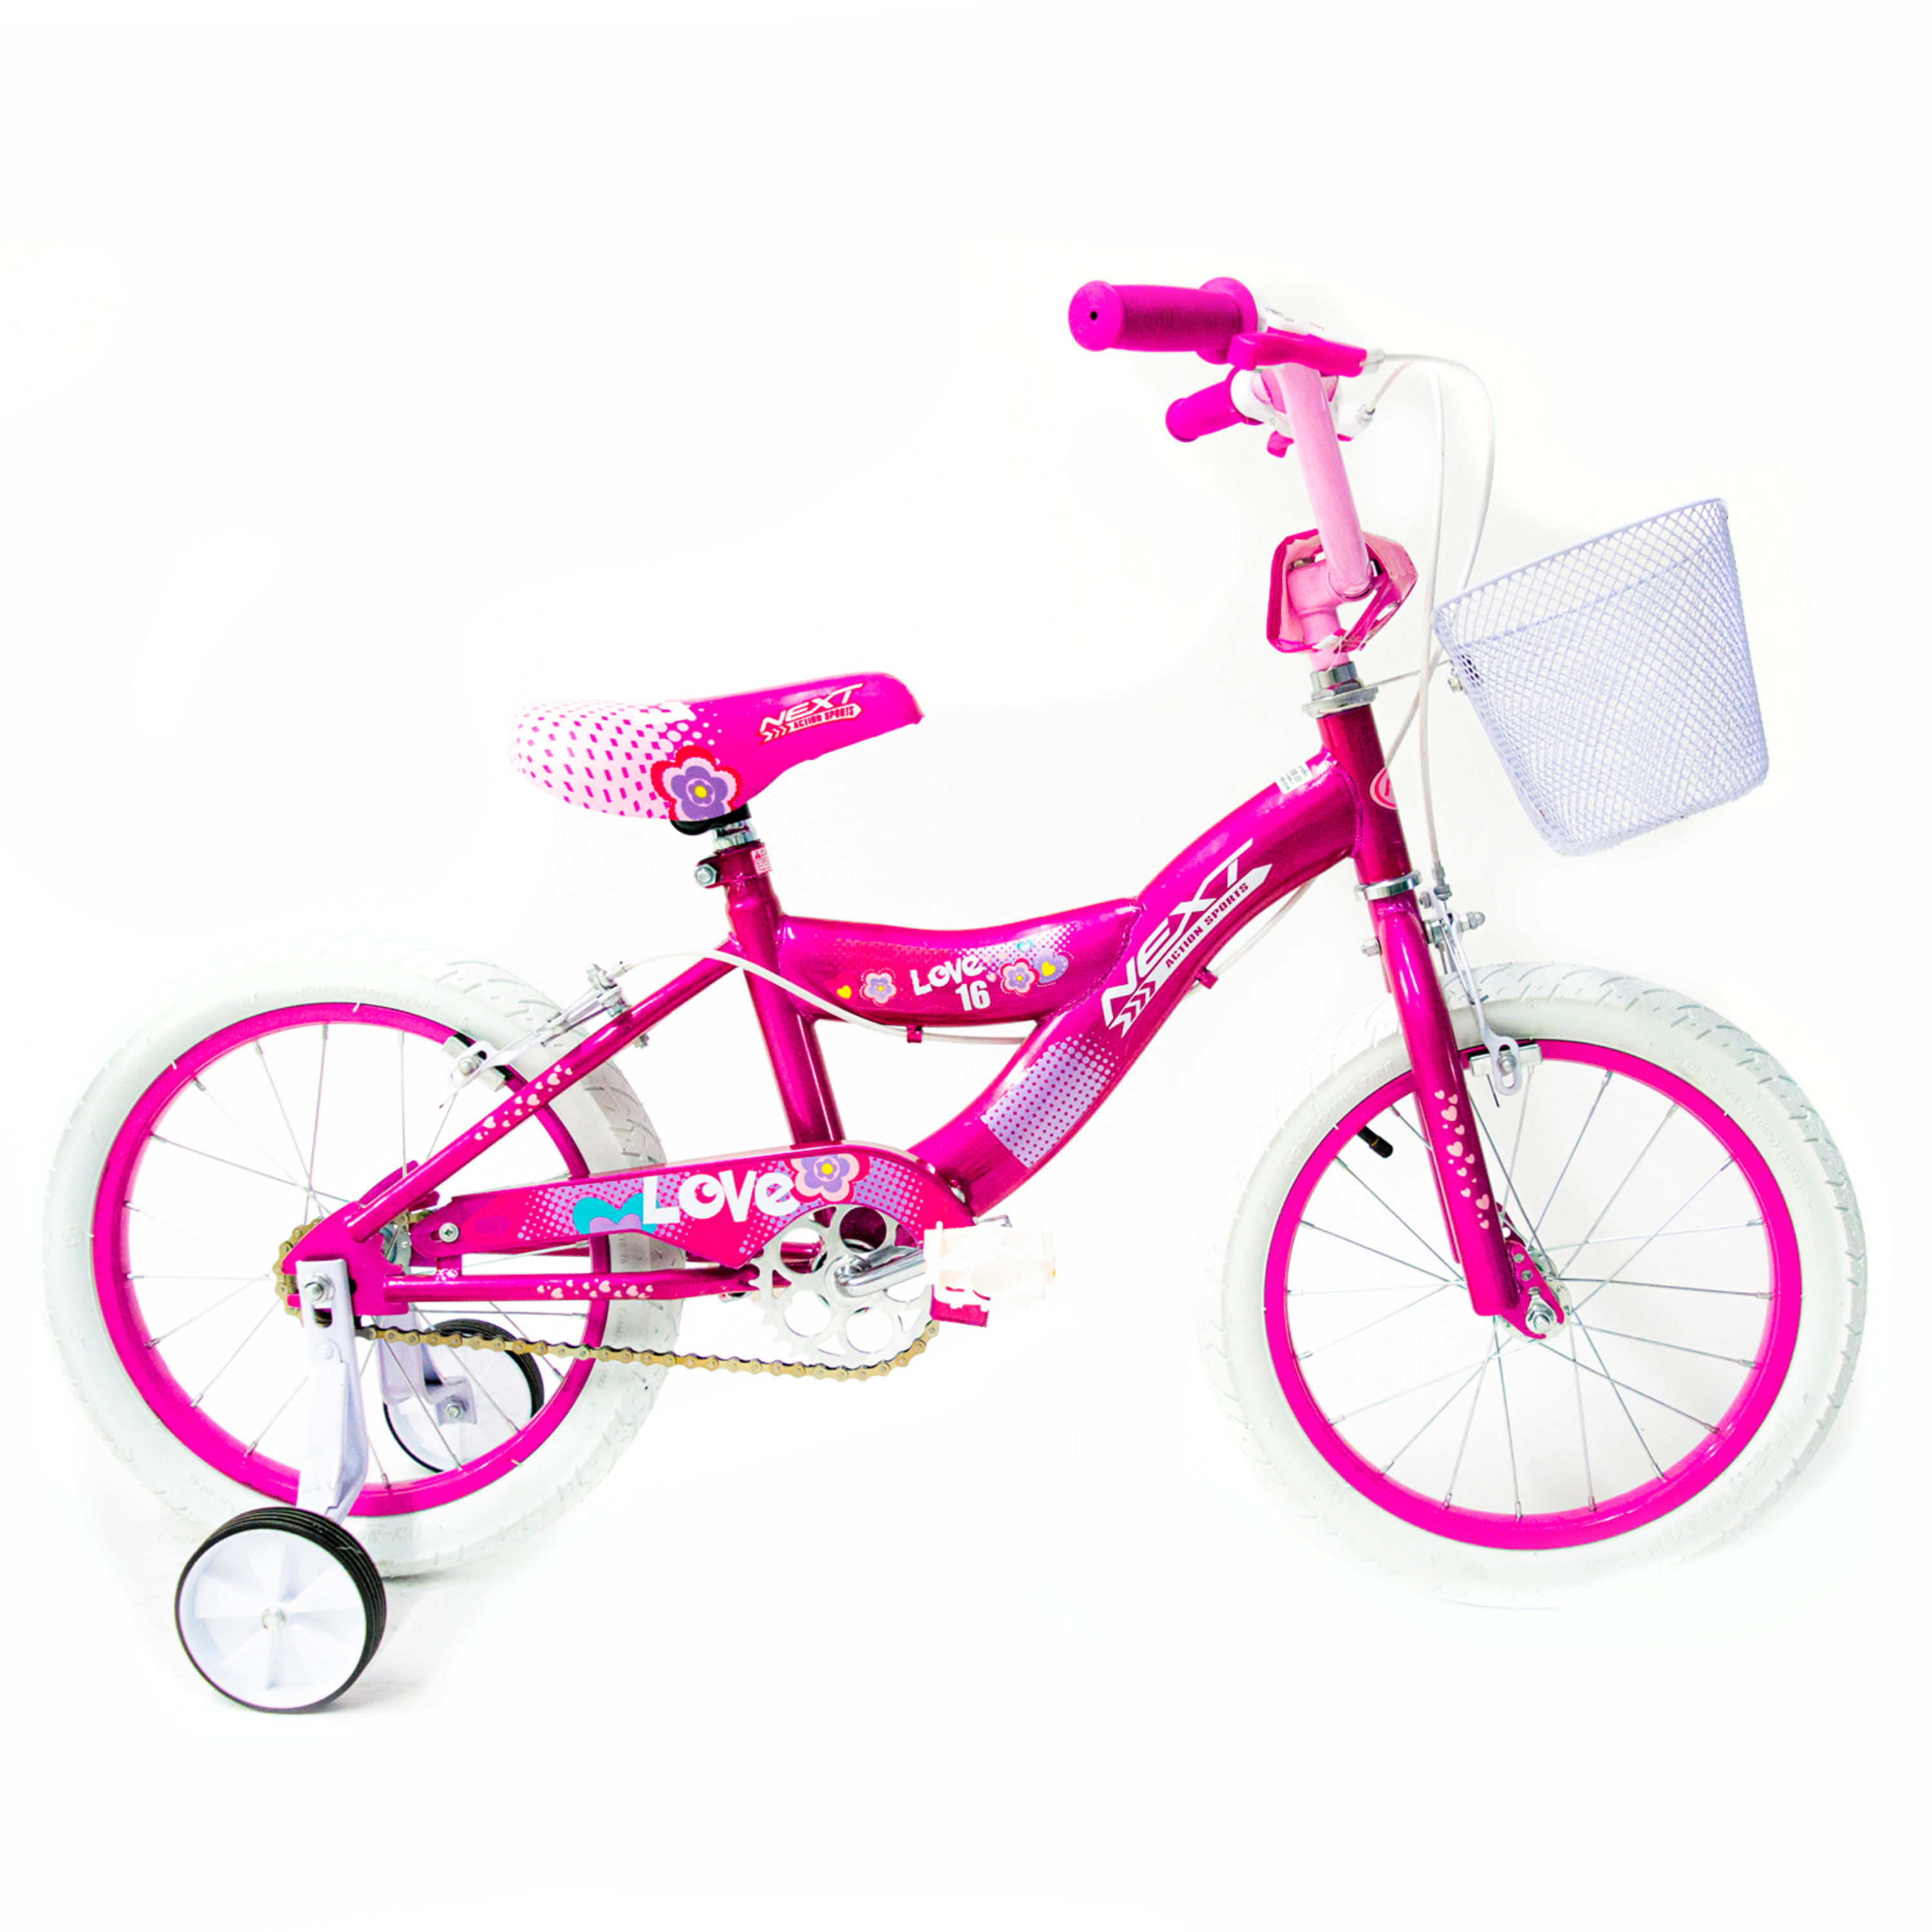 Comprar Bicicleta 16 Bmx Princesa para niñas de 6 a 8 años Modelo PRI160